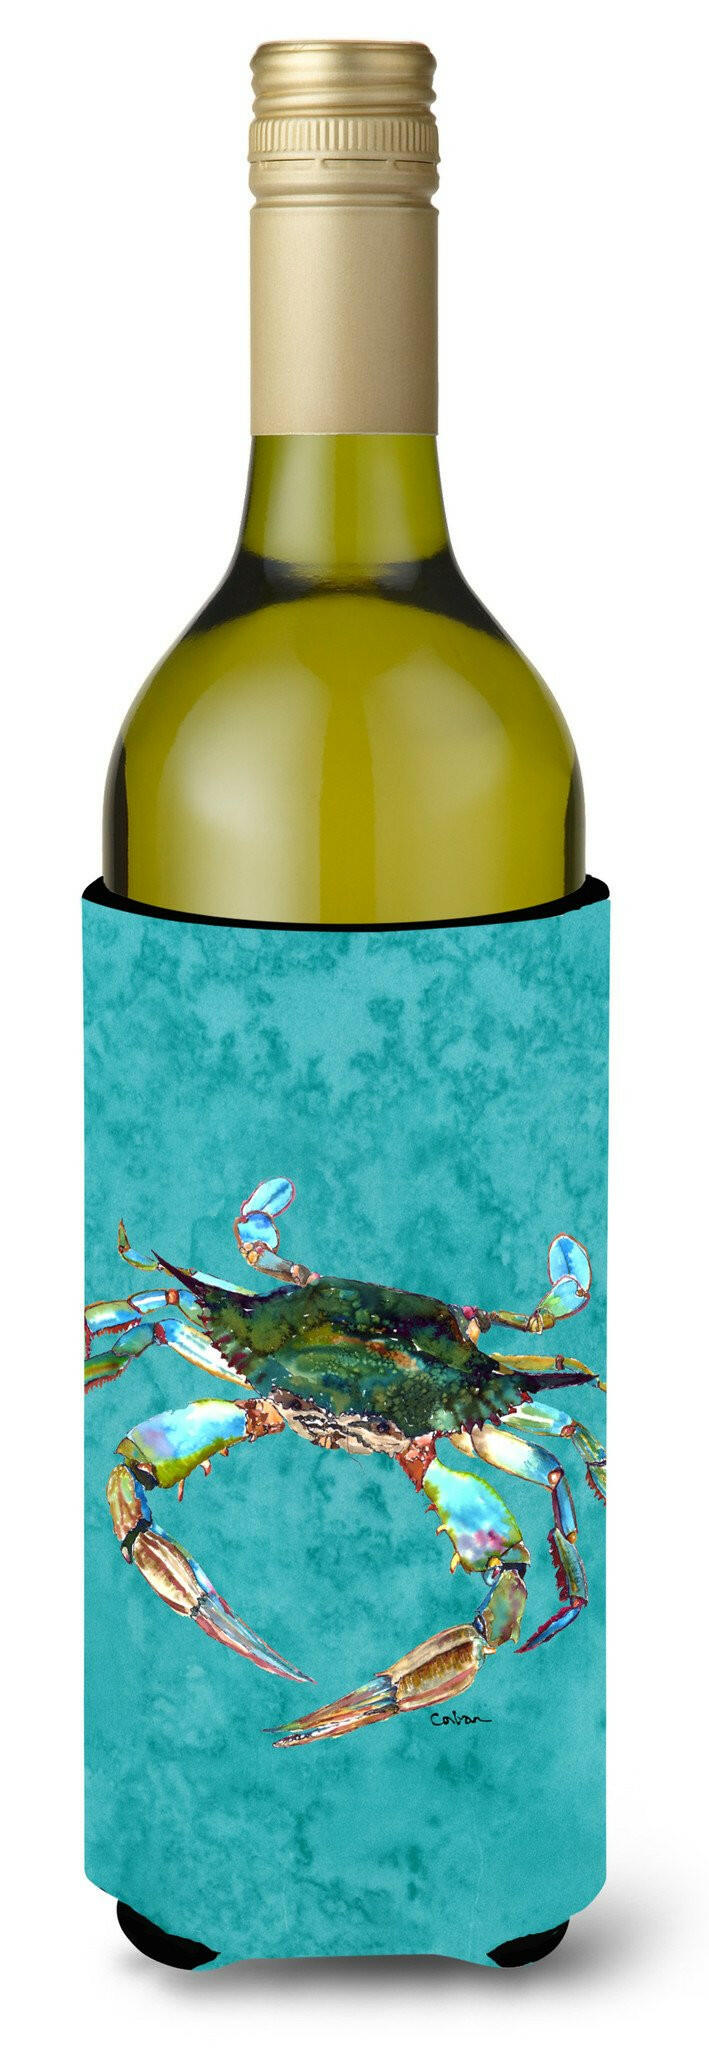 Blue Crab on Teal Wine Bottle Beverage Insulator Beverage Insulator Hugger by Caroline's Treasures